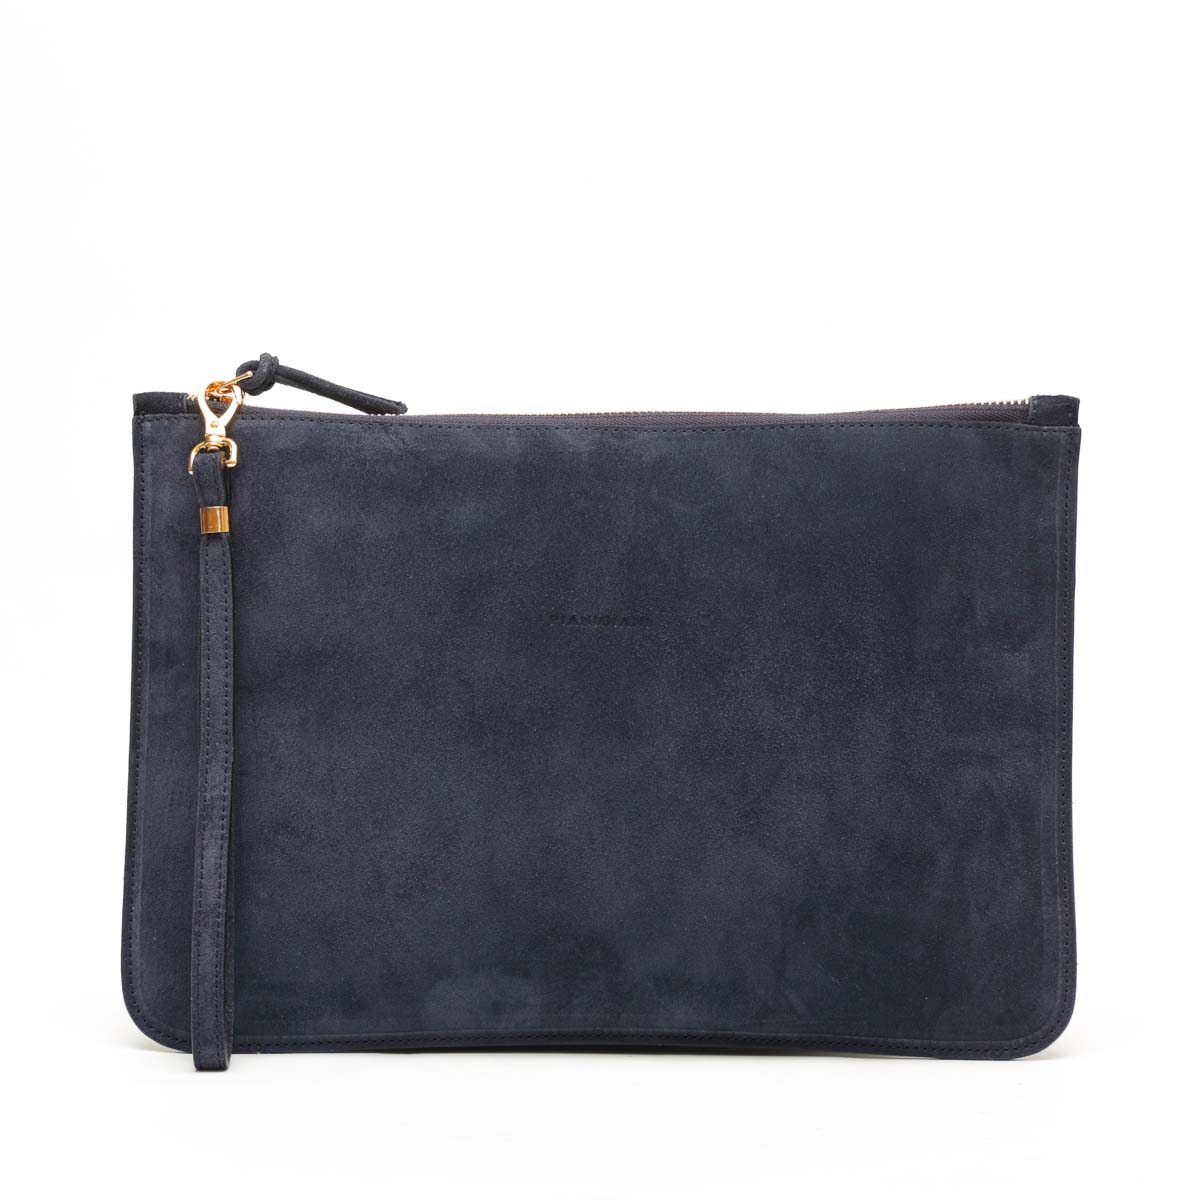 Rose, borsa modello bustina con polsino in pelle scamosciata blu, prodotta da Pianigiani.